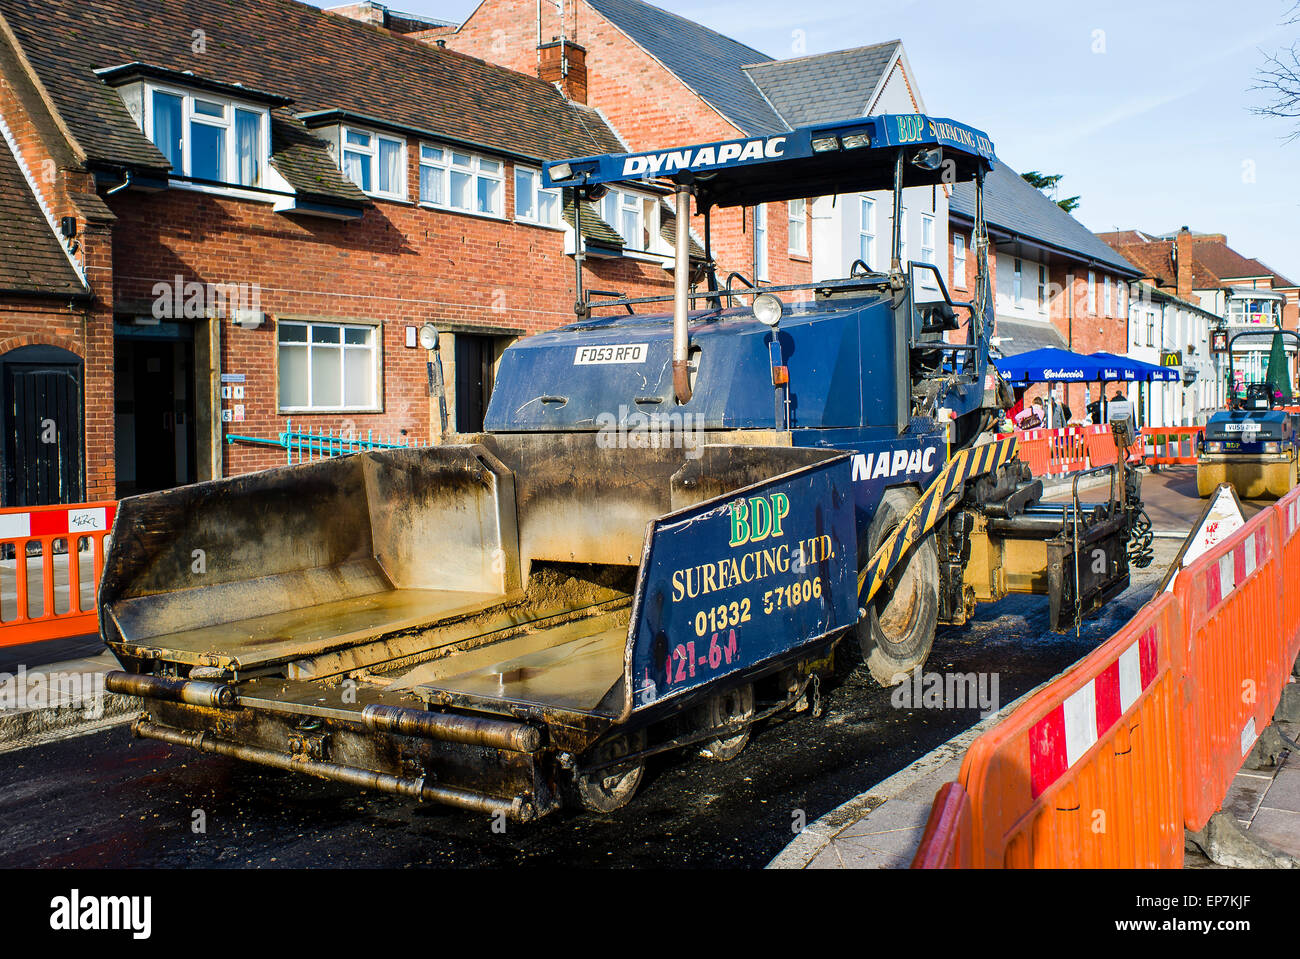 Road resurfacing in Stratford upon Avon Warwickshire UK Stock Photo